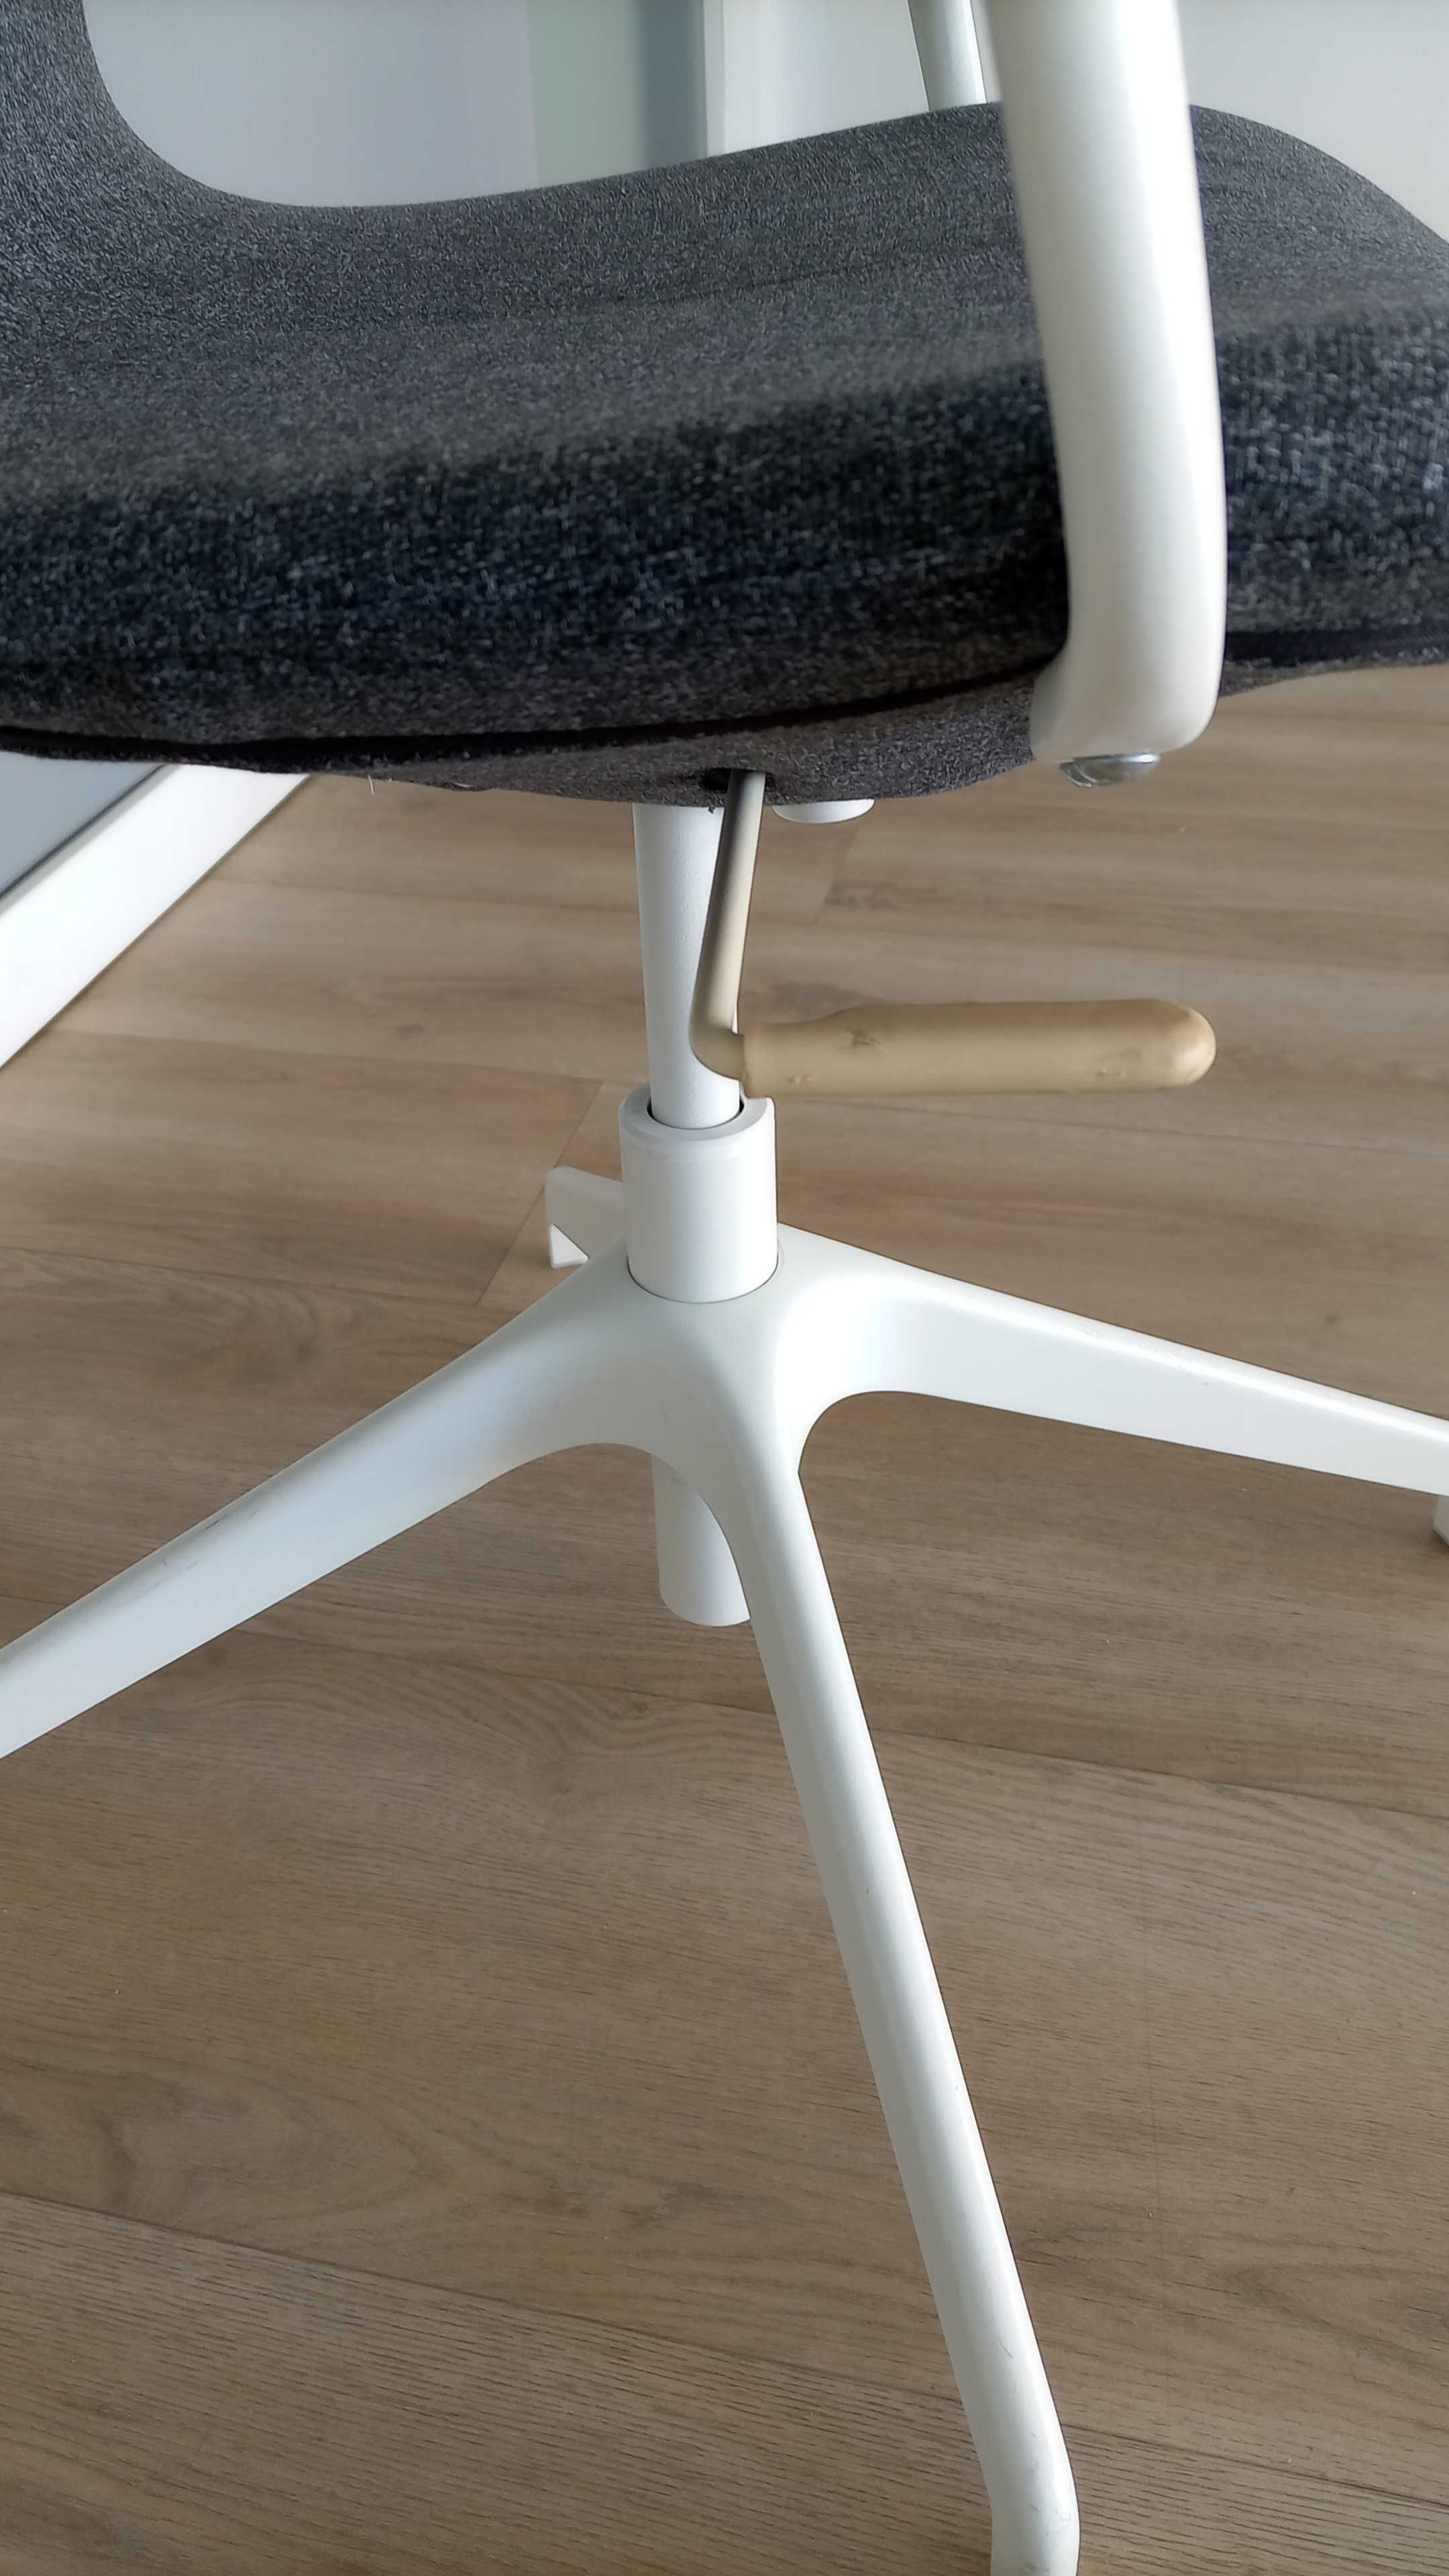 Cadeira Giratória Modelo Langfjall do IKEA - Ótimo estado